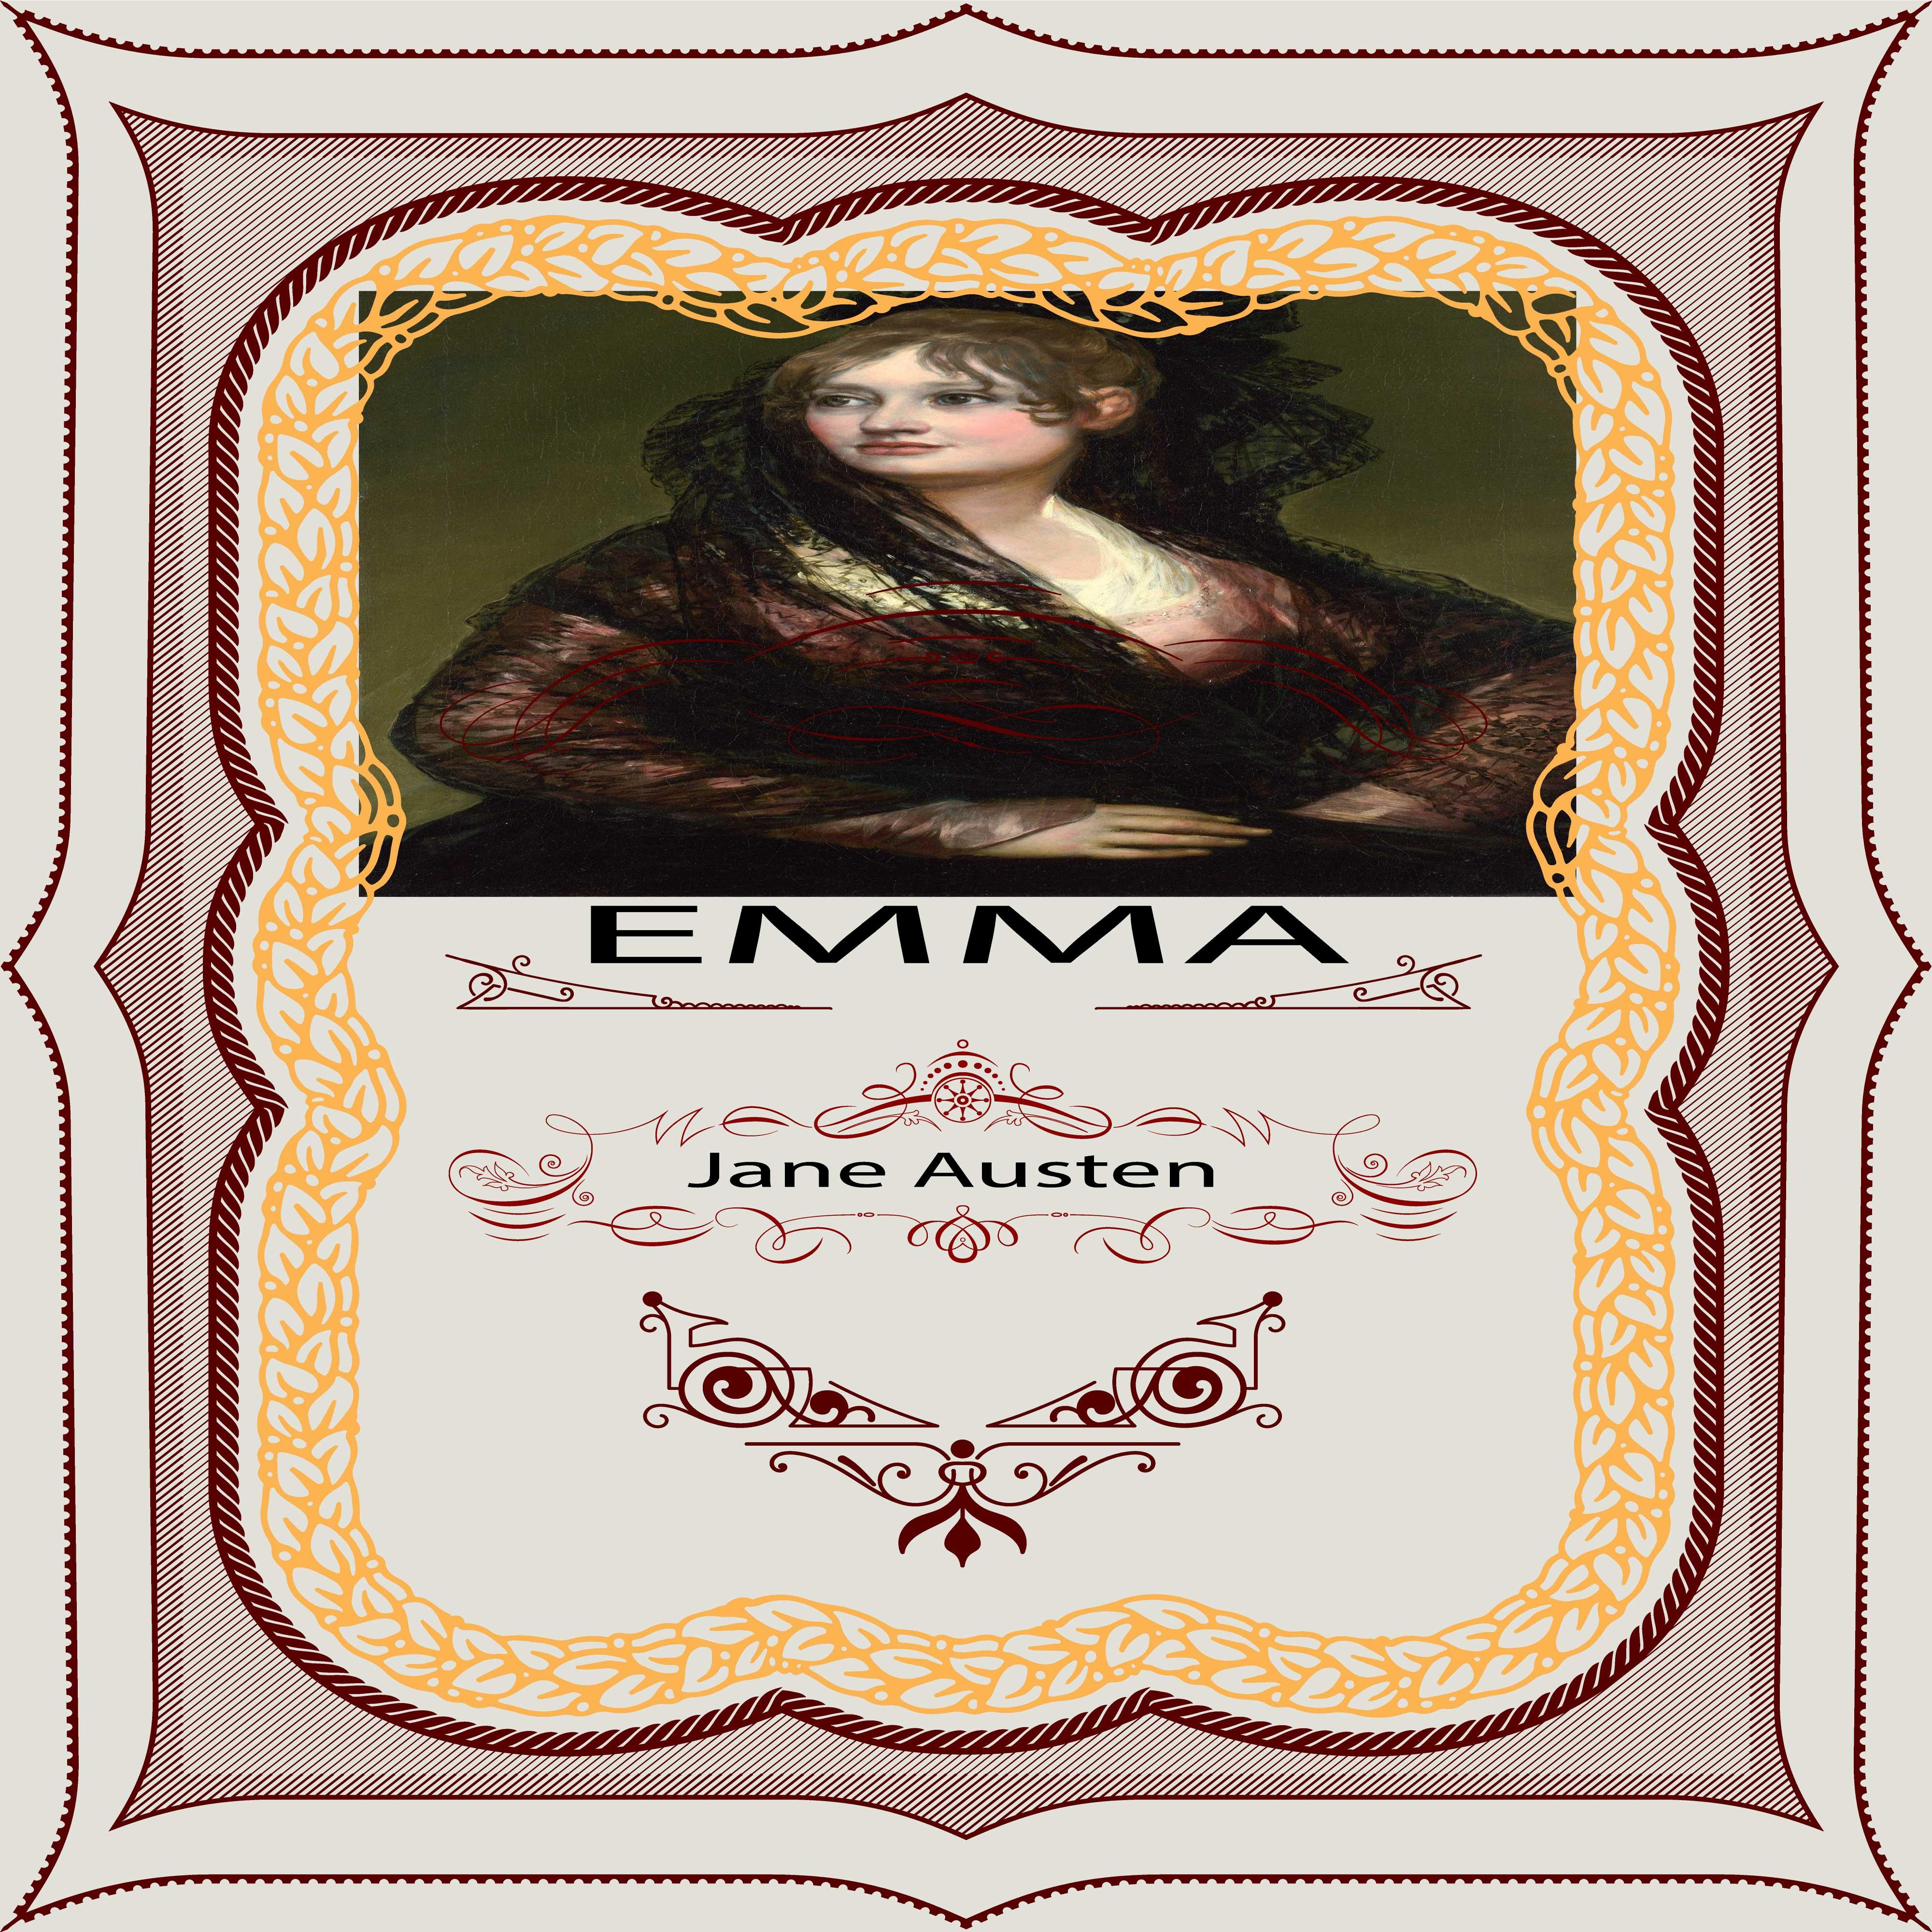 Jane Austen: Emma, Pt. 3, Chapter 19